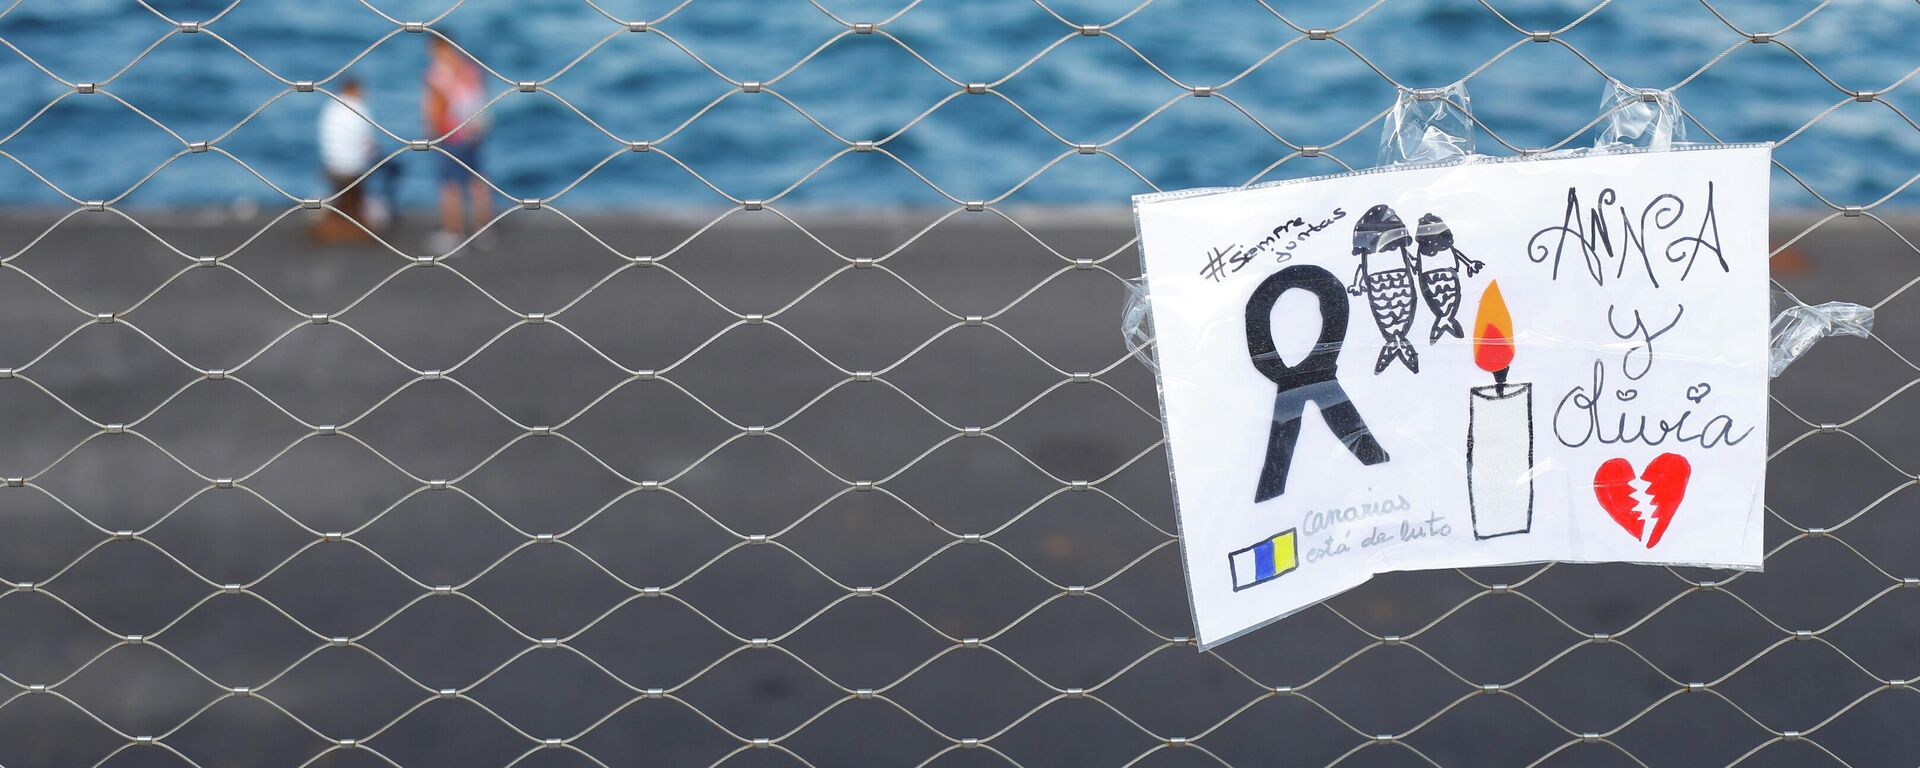 Un cartel colocado en una valla en memoria de las niñas desaparecidas en Tenerife, España - Sputnik Mundo, 1920, 14.06.2021